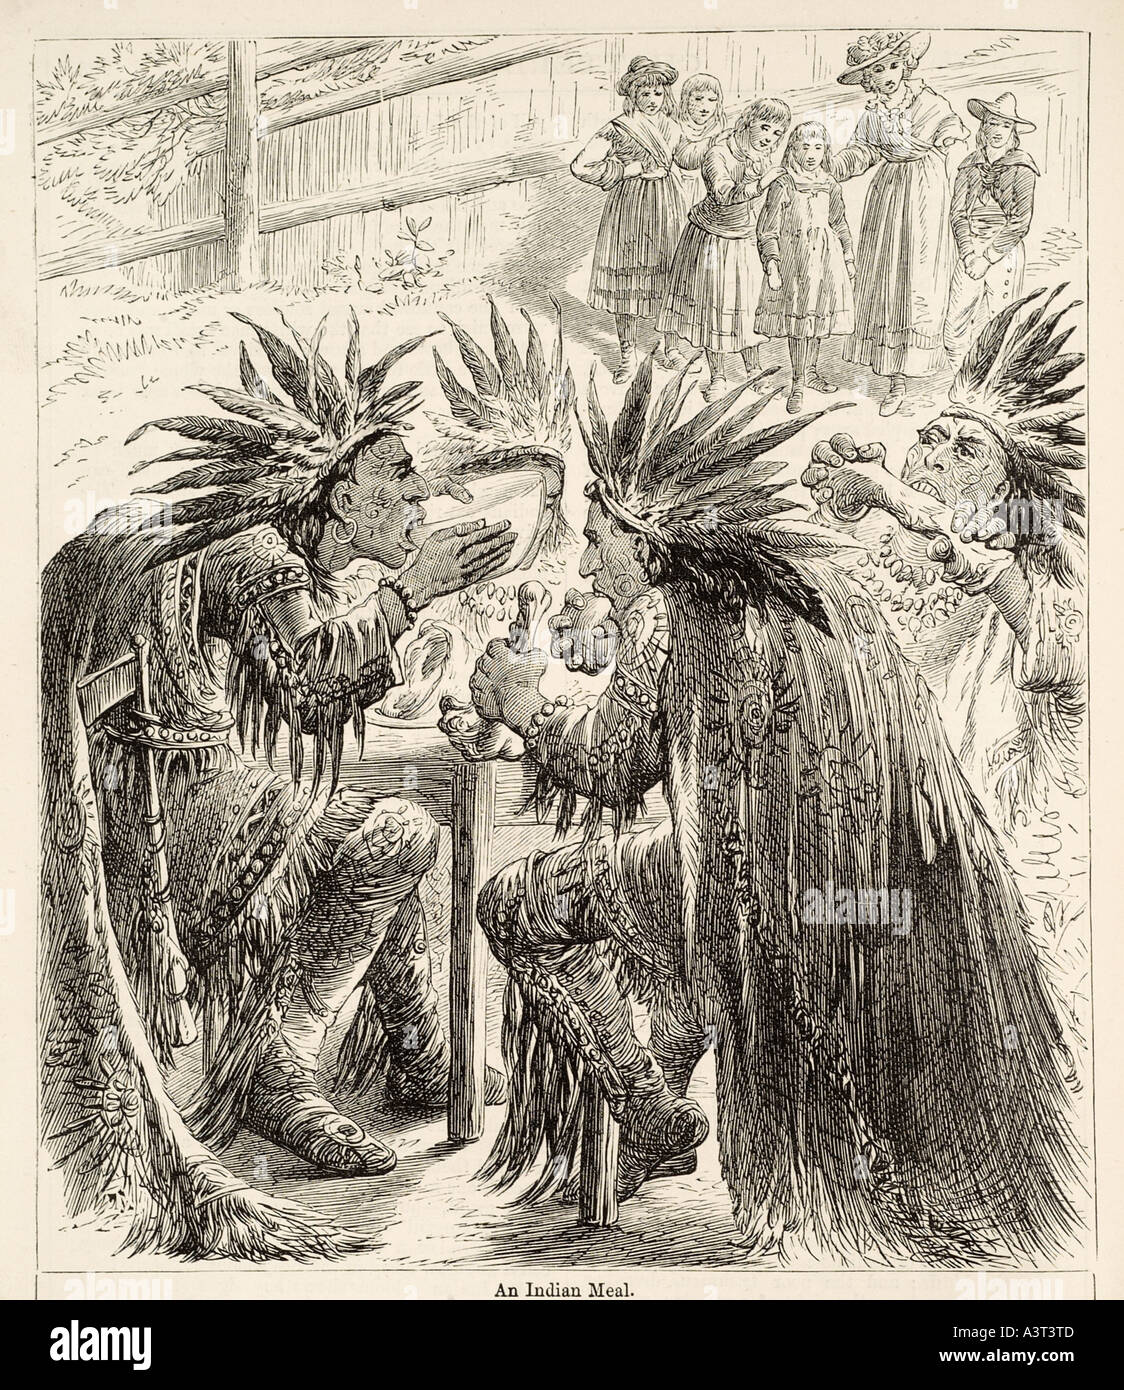 Comida india tribu americana nativa de América el hombre noble salvaje  viaje cultura comer beber consumen repast tocado de plumas disfraz dre  Fotografía de stock - Alamy